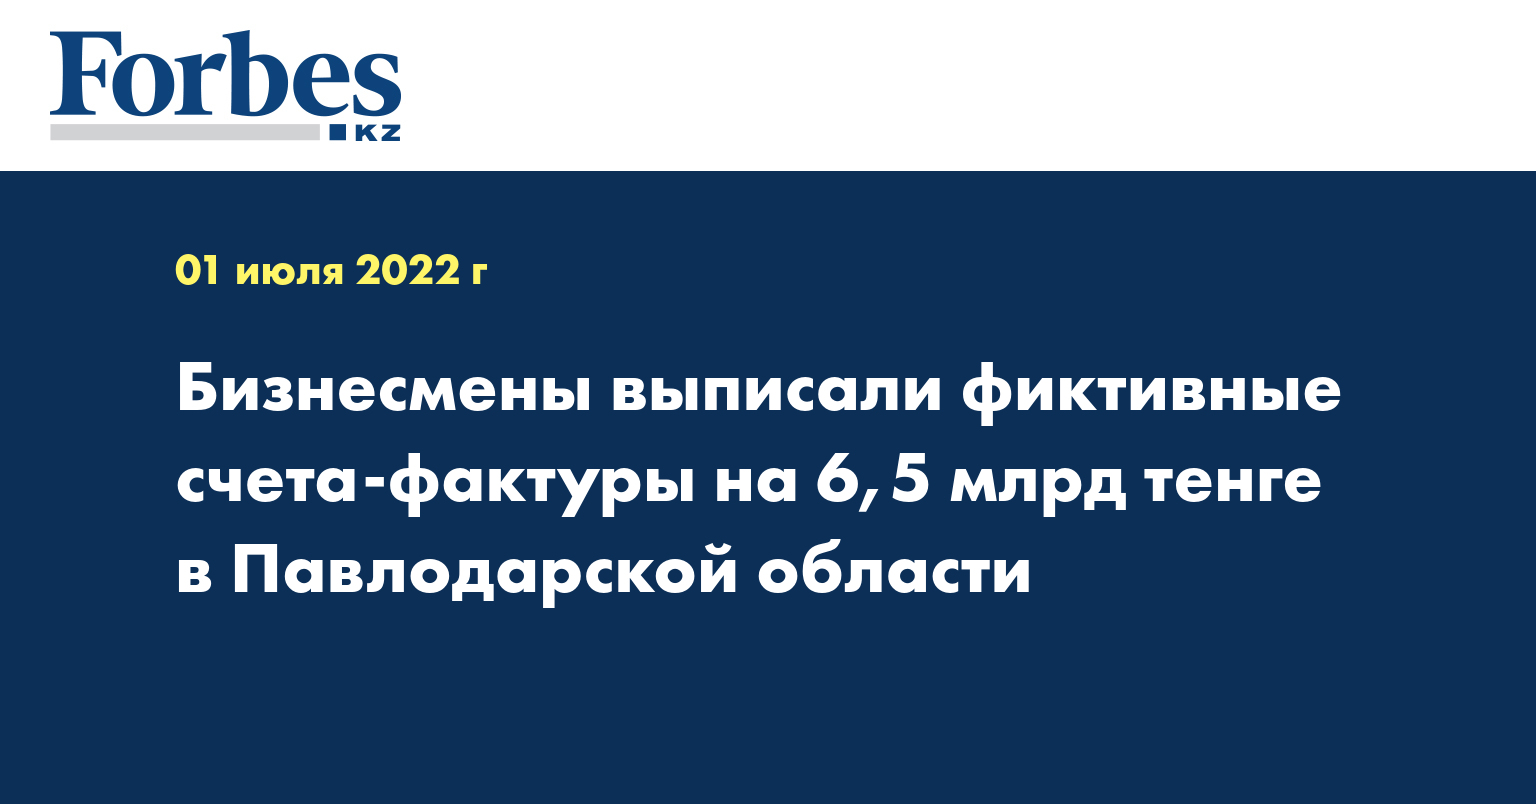 Бизнесмены выписали фиктивные счета-фактуры на 6,5 млрд тенге в Павлодарской области